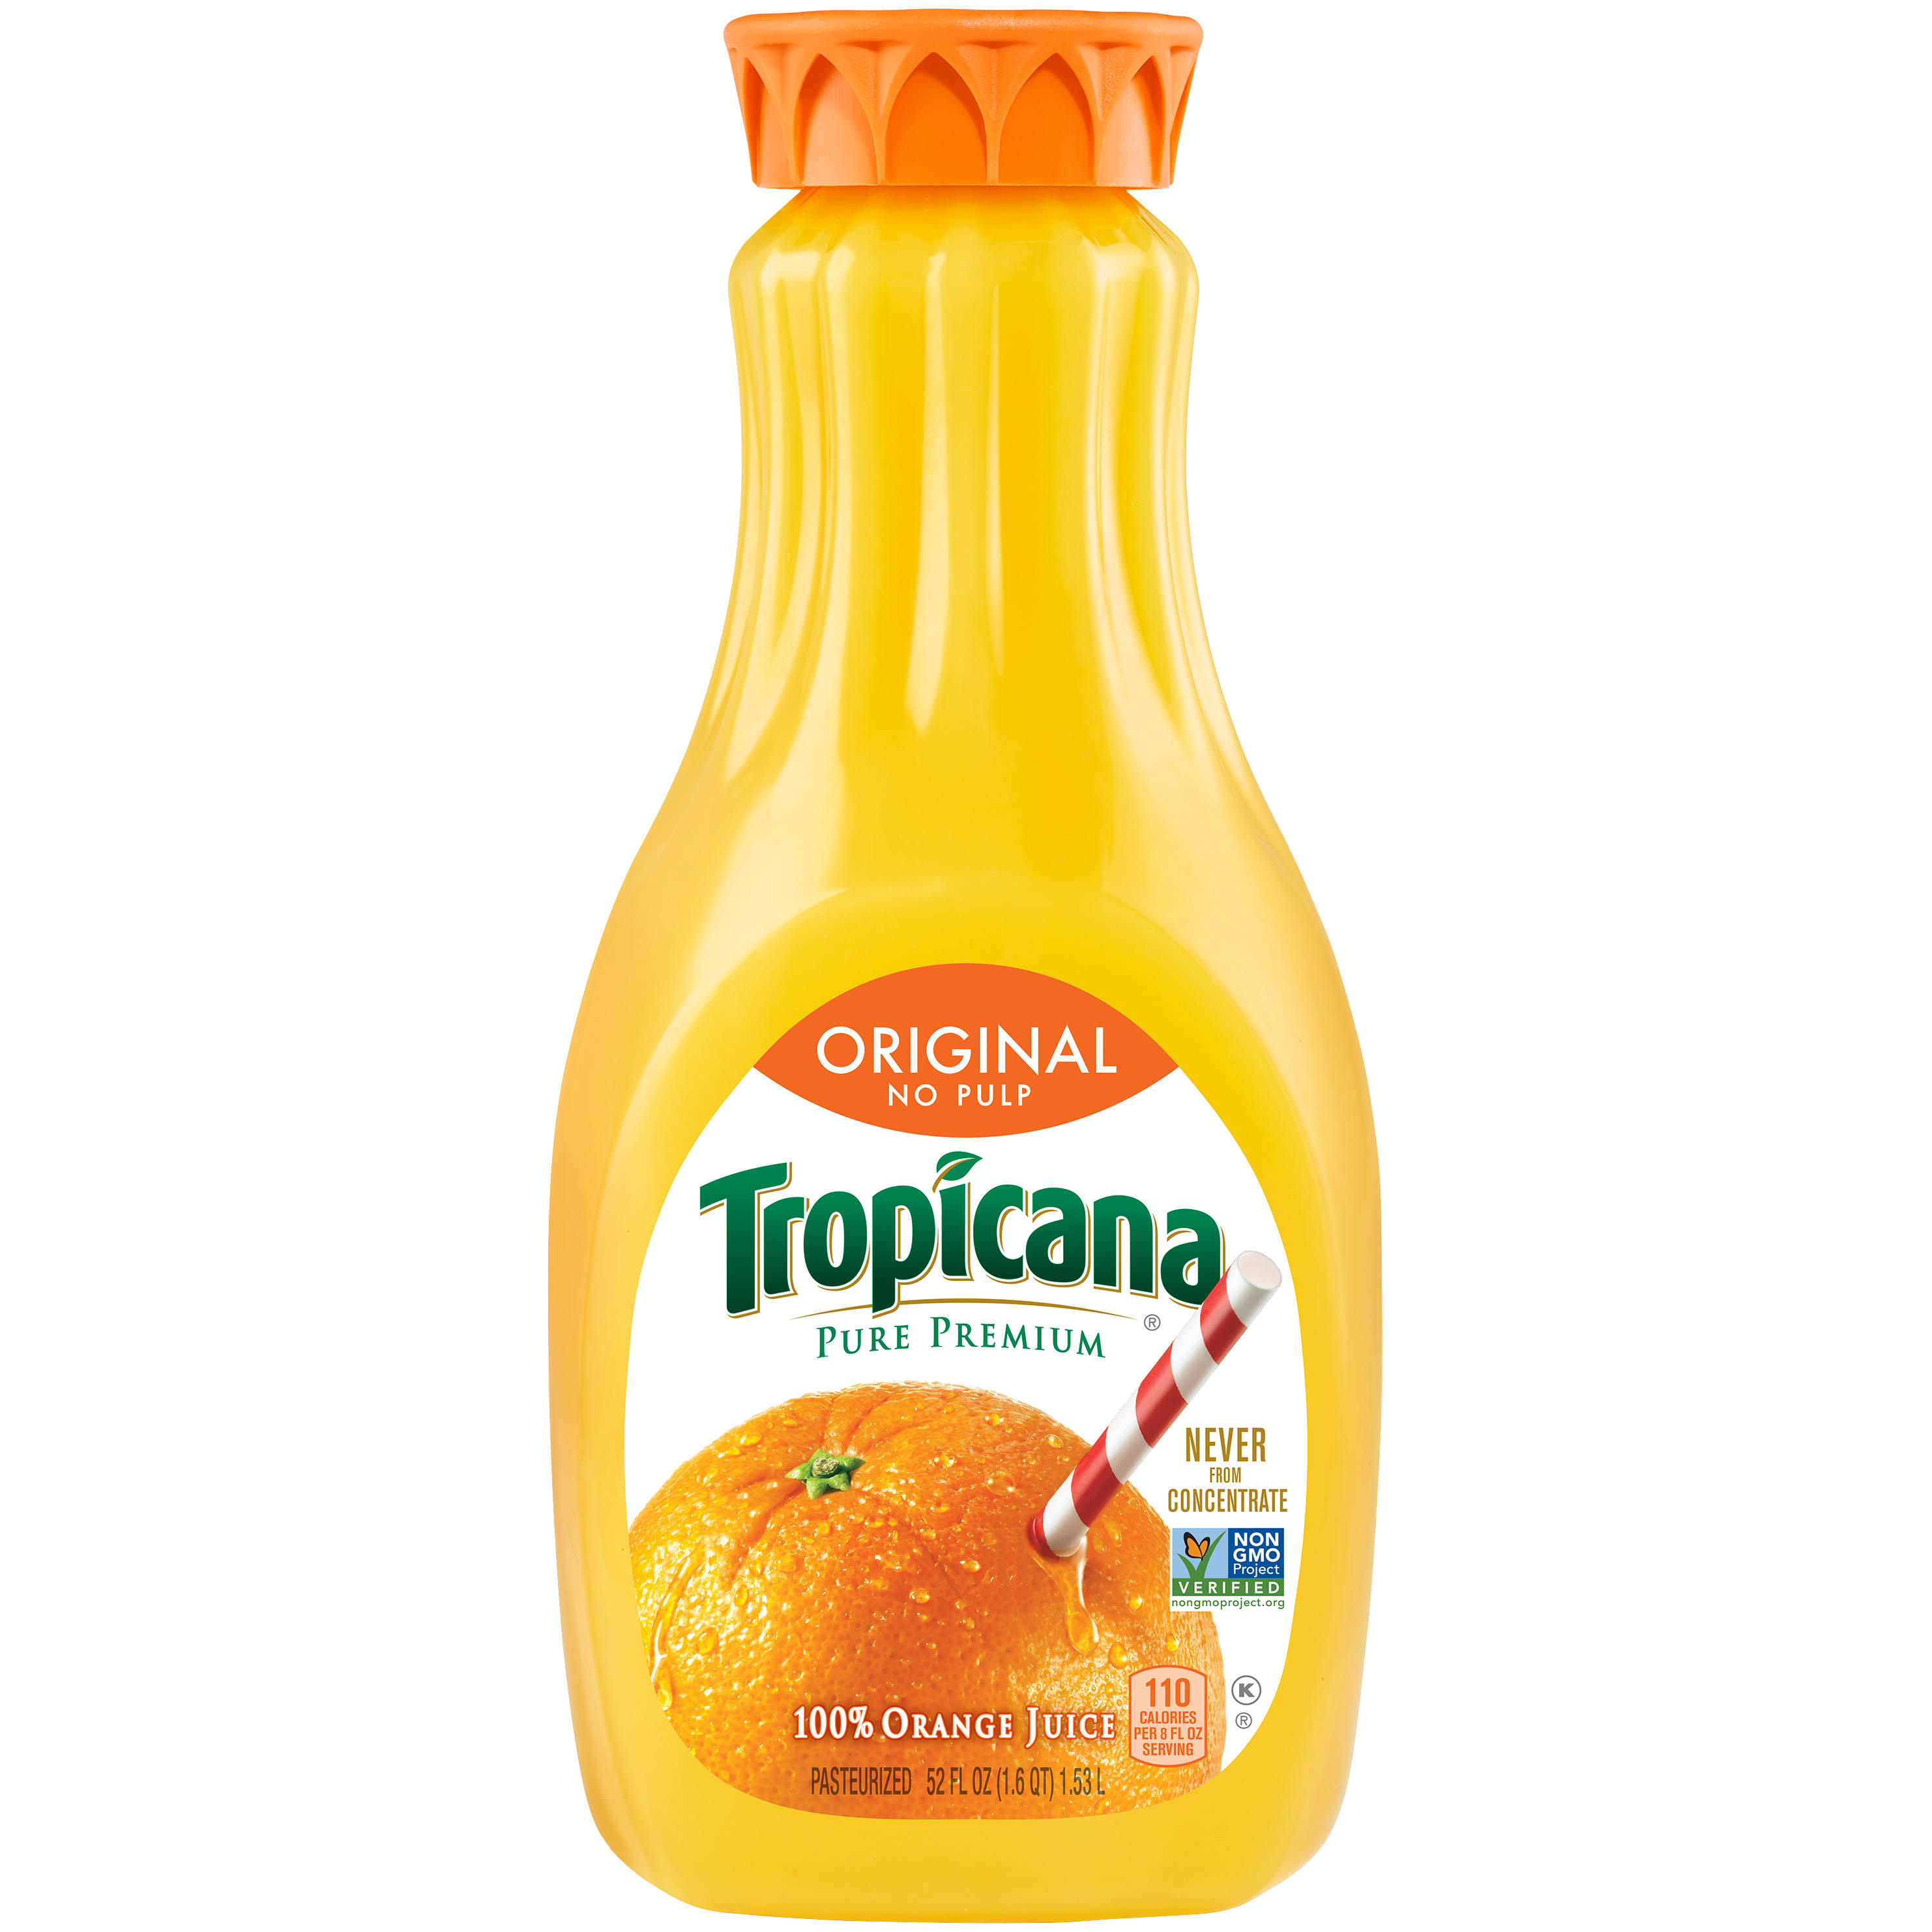 Tropicana 100% Juice, Original, Orange, No Pulp - 52 fl oz